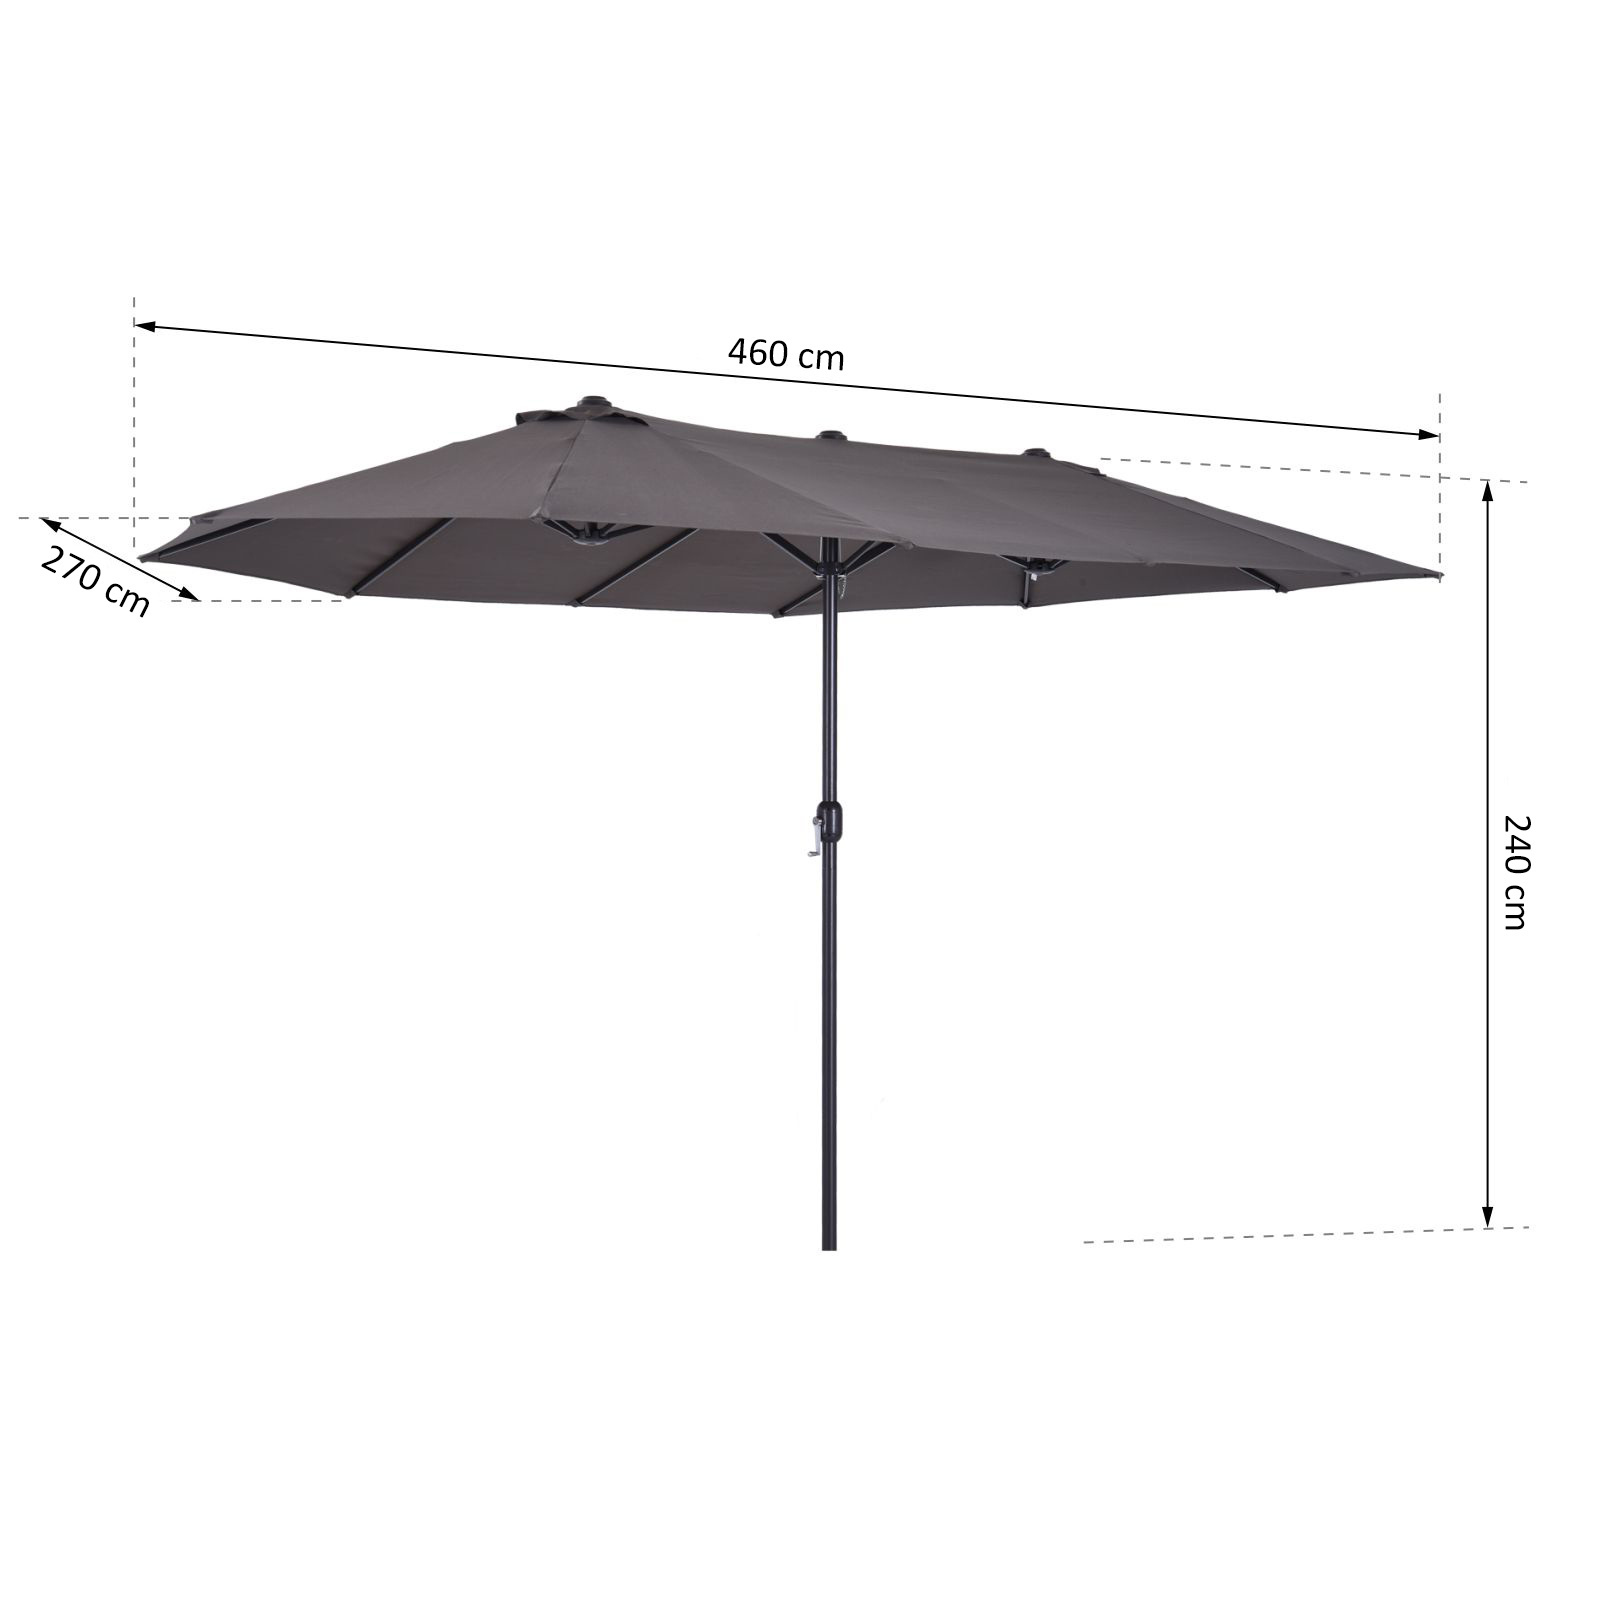 Riskeren maximaal Fascineren Koop Sunny Dubbele parasol met slingerhandvat grijs 460 x 270 x 240 cm  Online bij ThuisXL.nl - ThuisXL.nl